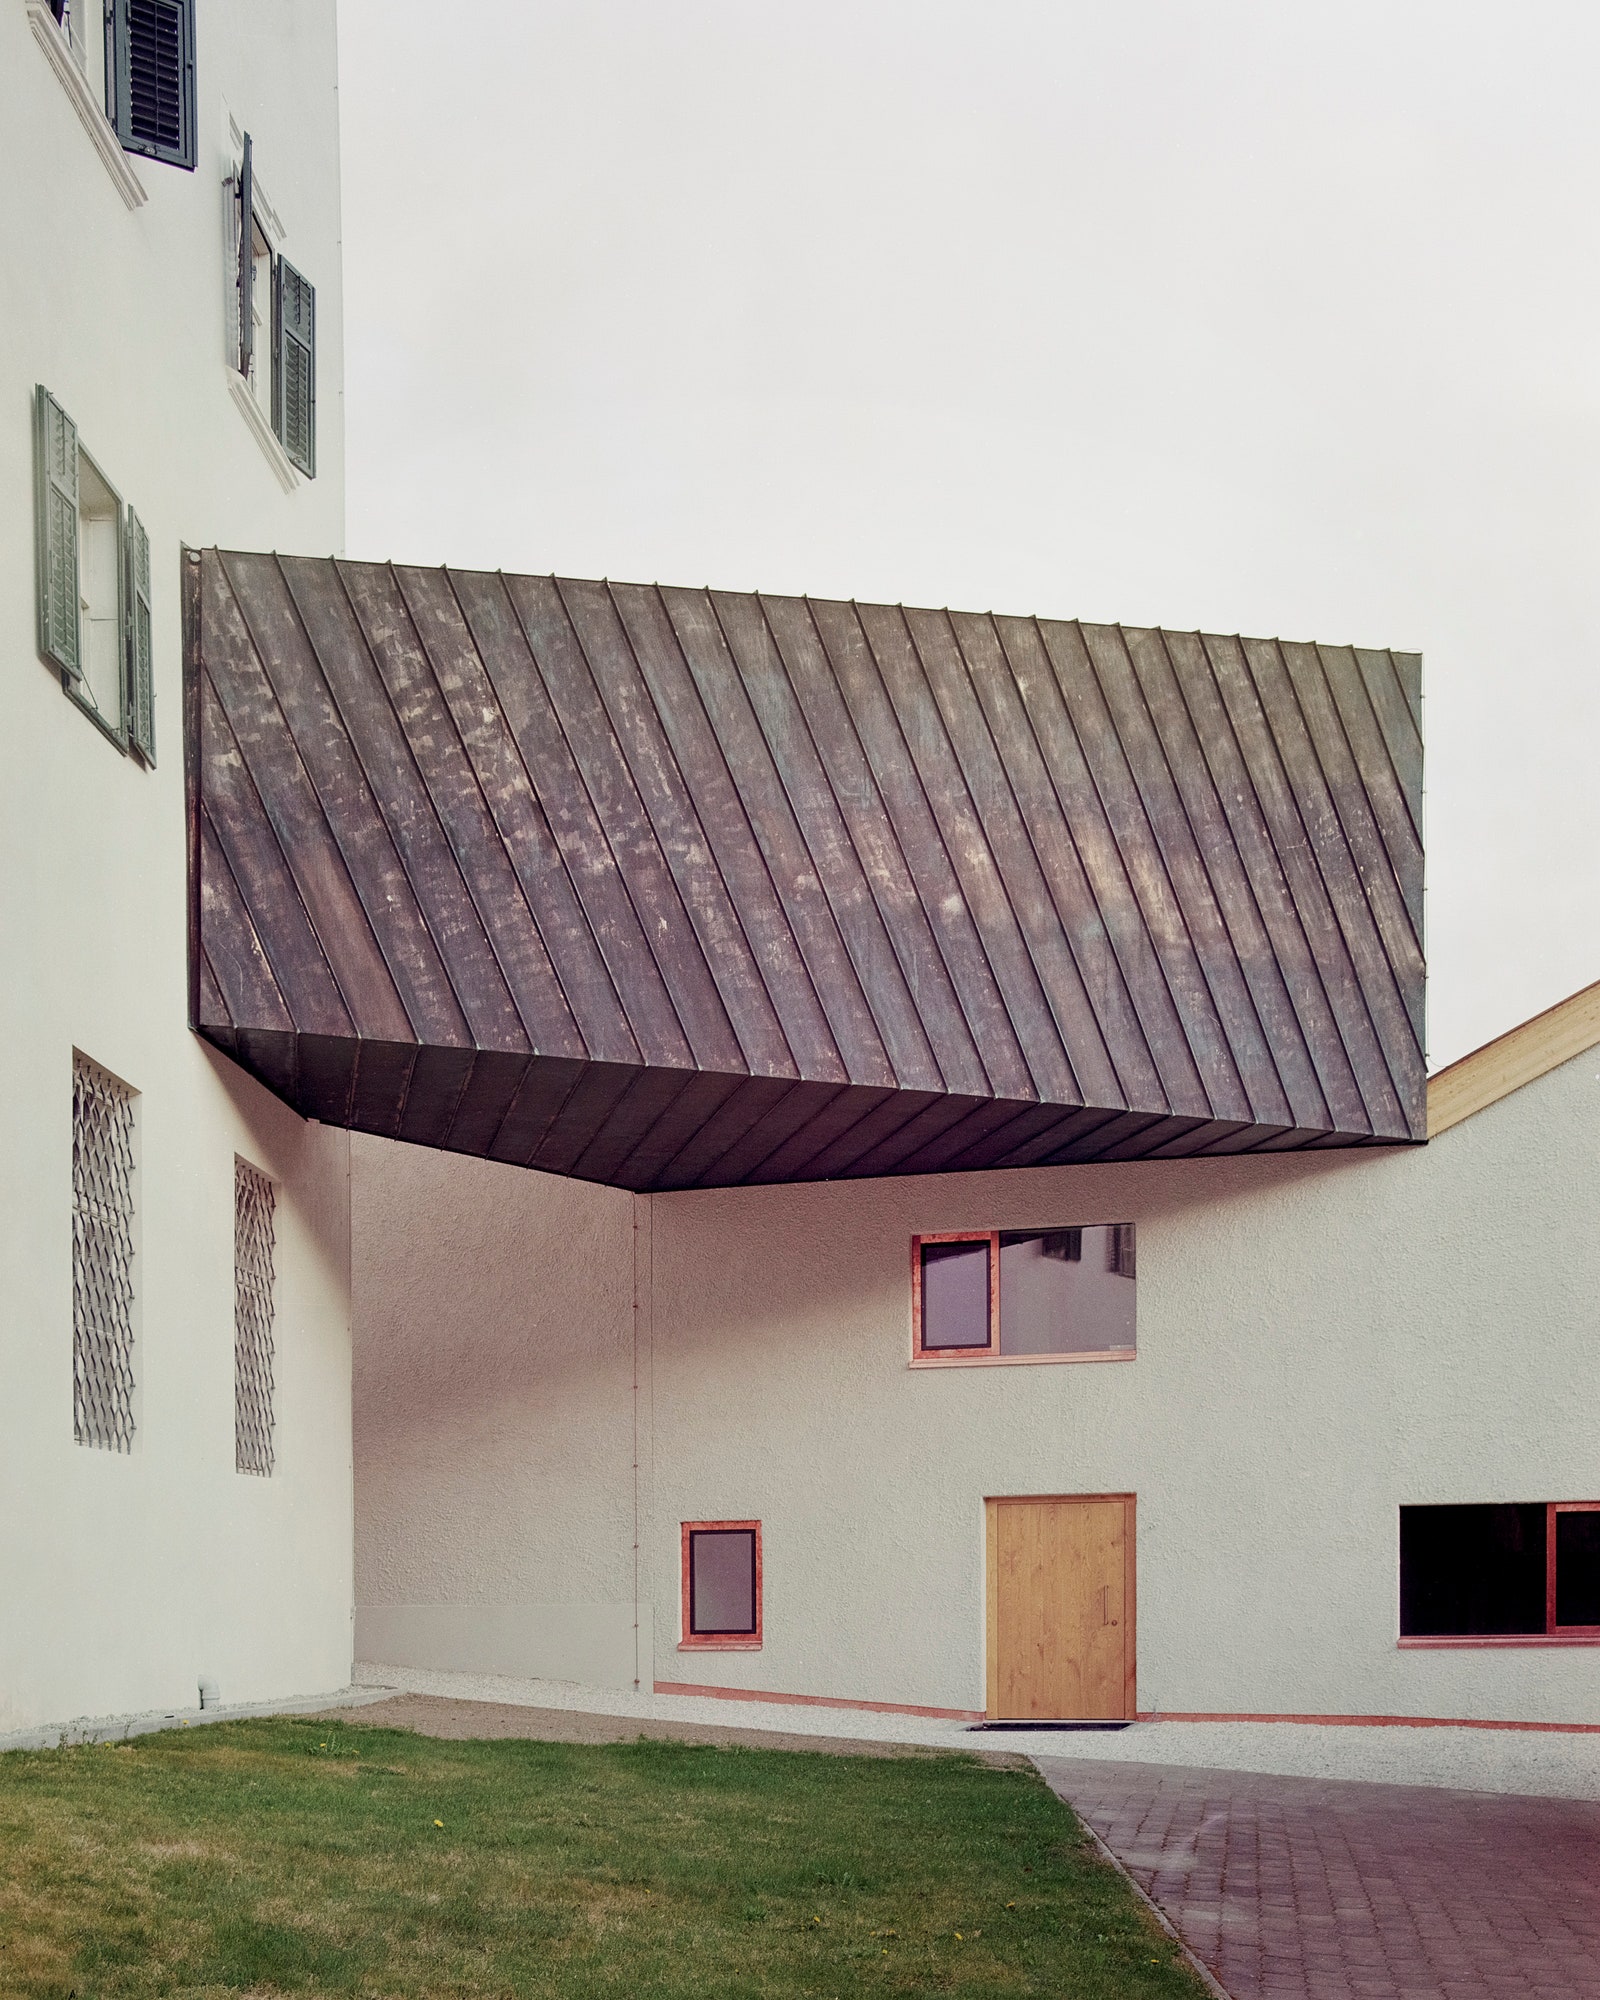 Галерея с металлической обшивкой соединяющая три строения с выставочными пространствами.